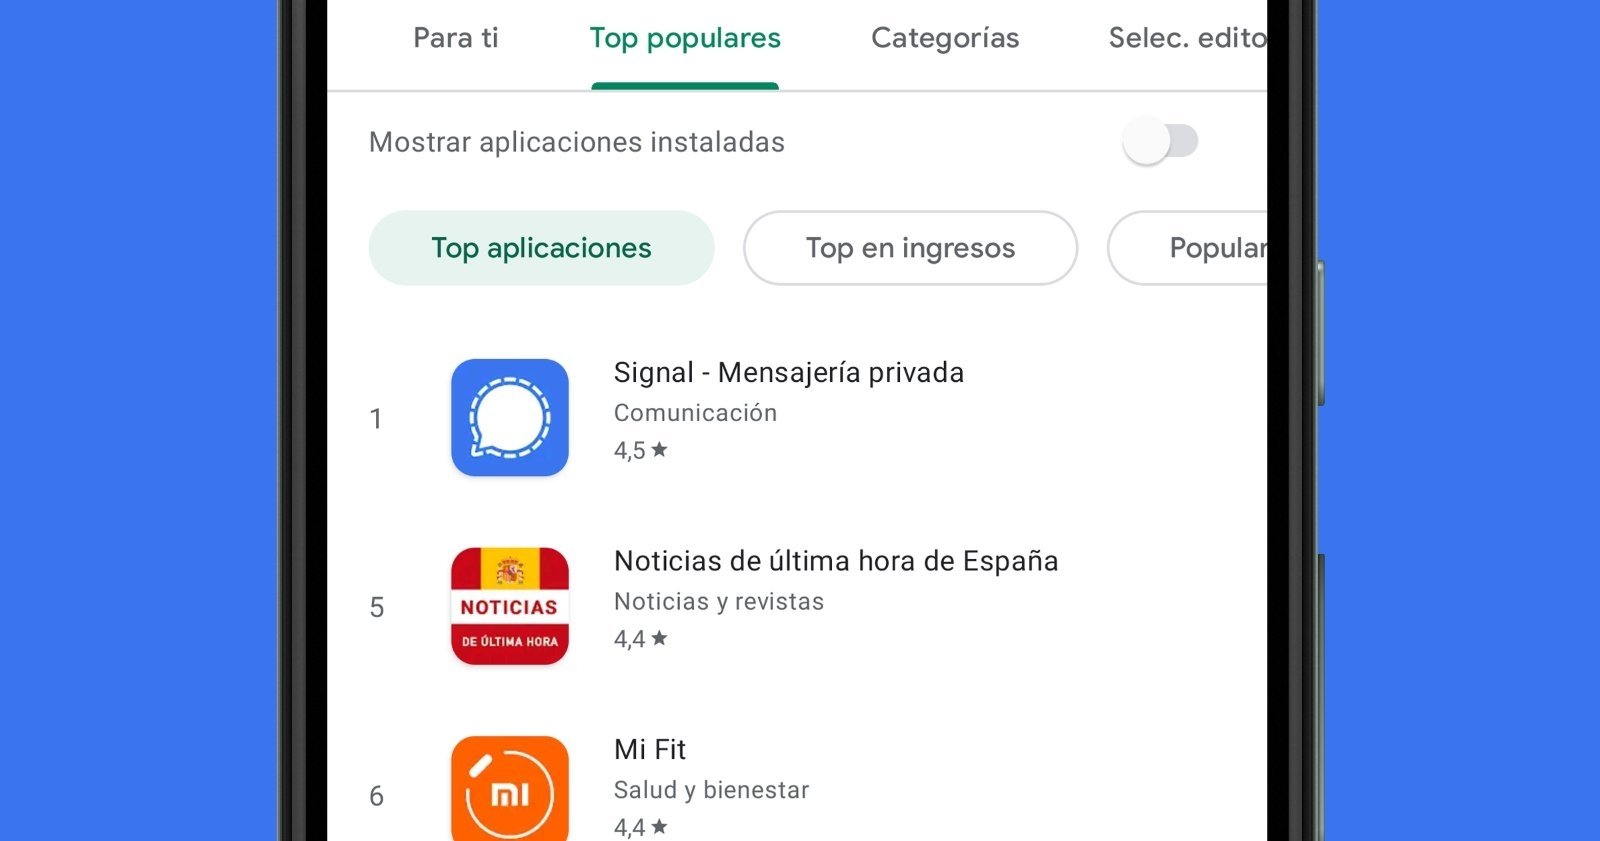 Signal se coloca en el top 1 de apps más populares y prepara grandes novedades